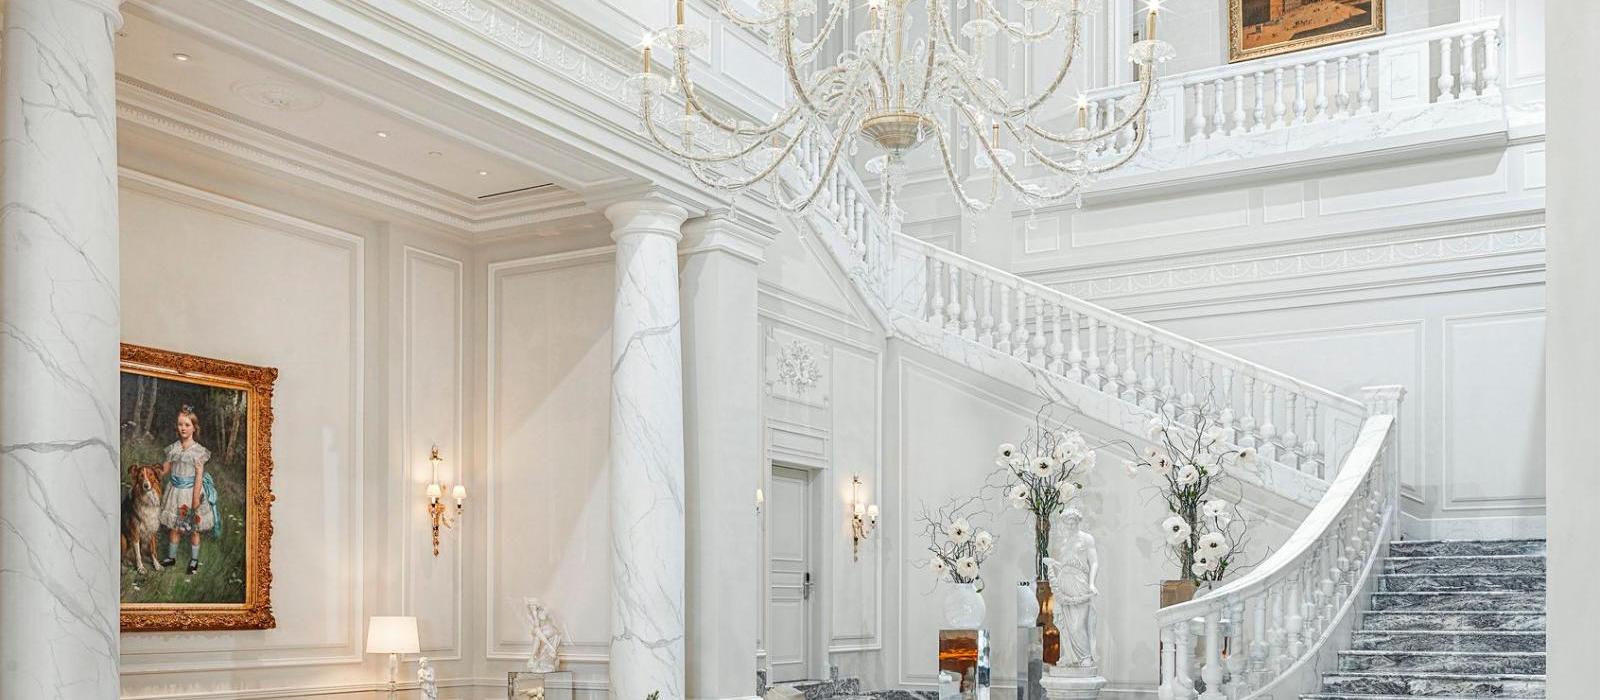 米兰巴黎宫水疗酒店(Palazzo Parigi Hotel & Grand Spa) 图片  www.lhw.cn